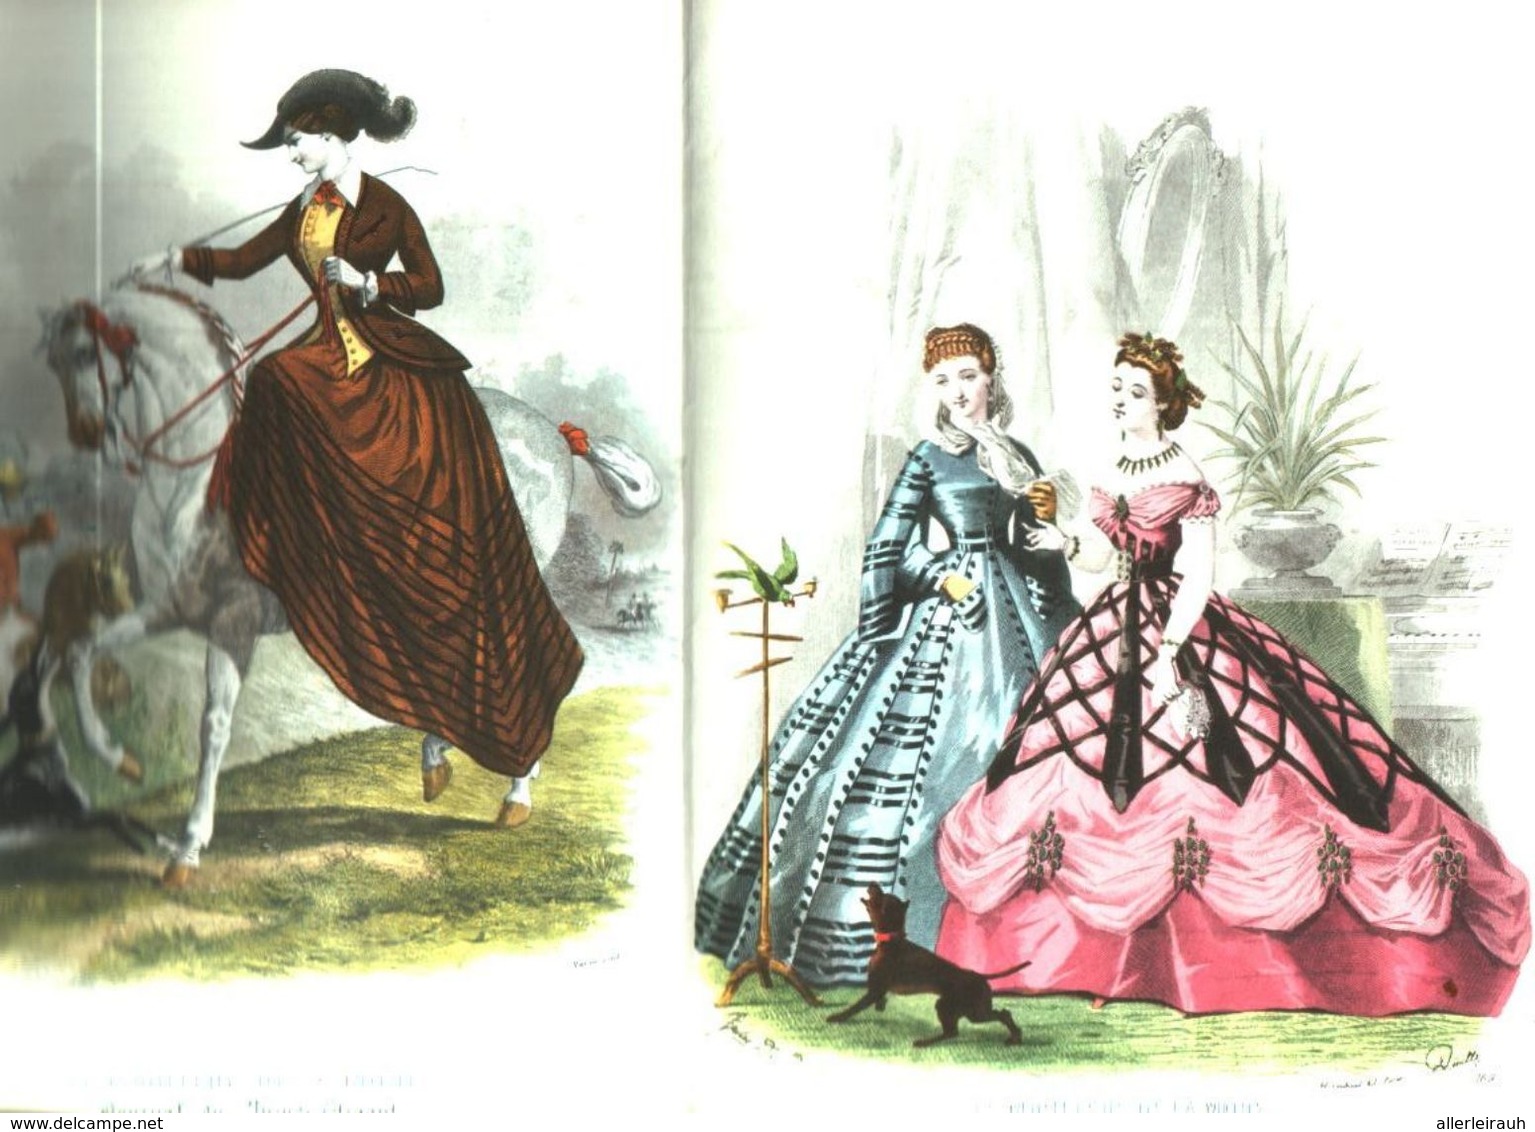 Le Moniteur De La Mode (den Bildern Nach Mode Um 1860) / Druck, Entnommen Aus Kalender / Datum Unbekannt - Colis